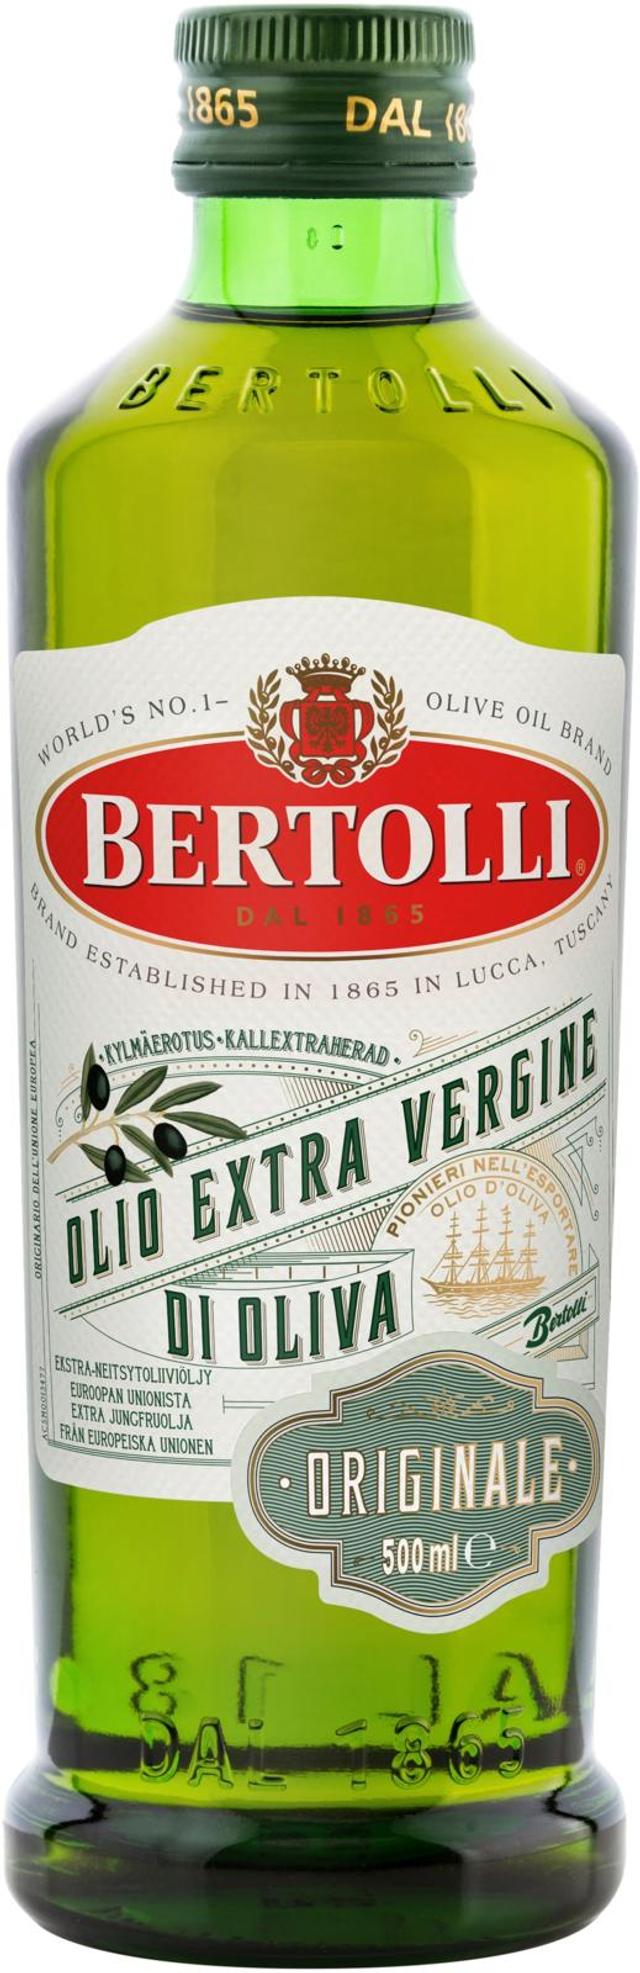 Bertolli 500ml Originale ekstra-neitsytoliiviöljy